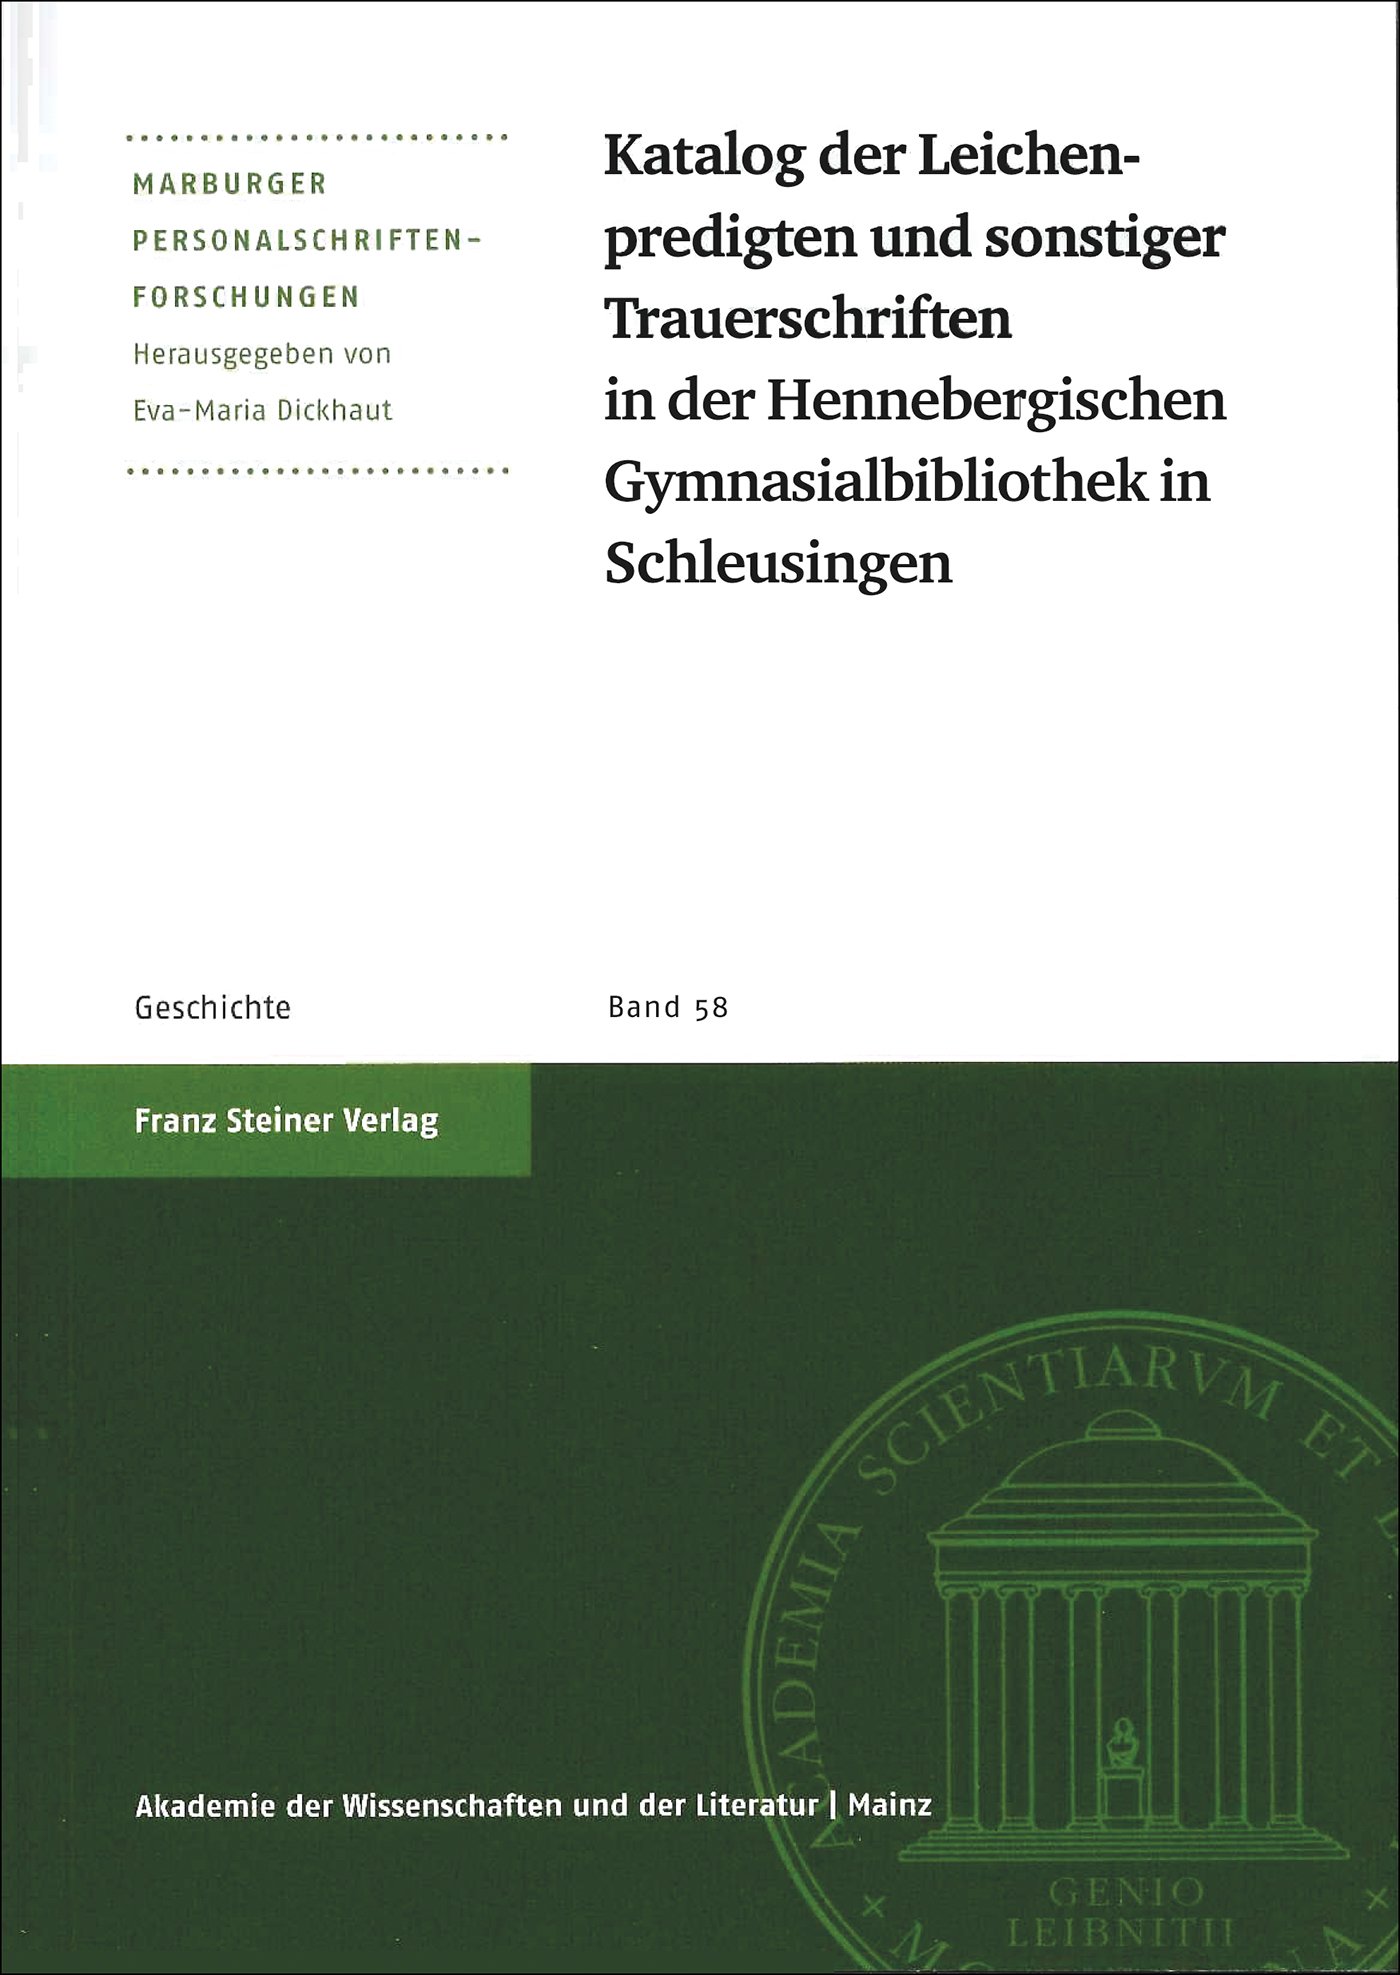 Katalog der Leichenpredigten und sonstiger Trauerschriften in der Hennebergischen Gymnasialbibliothek in Schleusingen